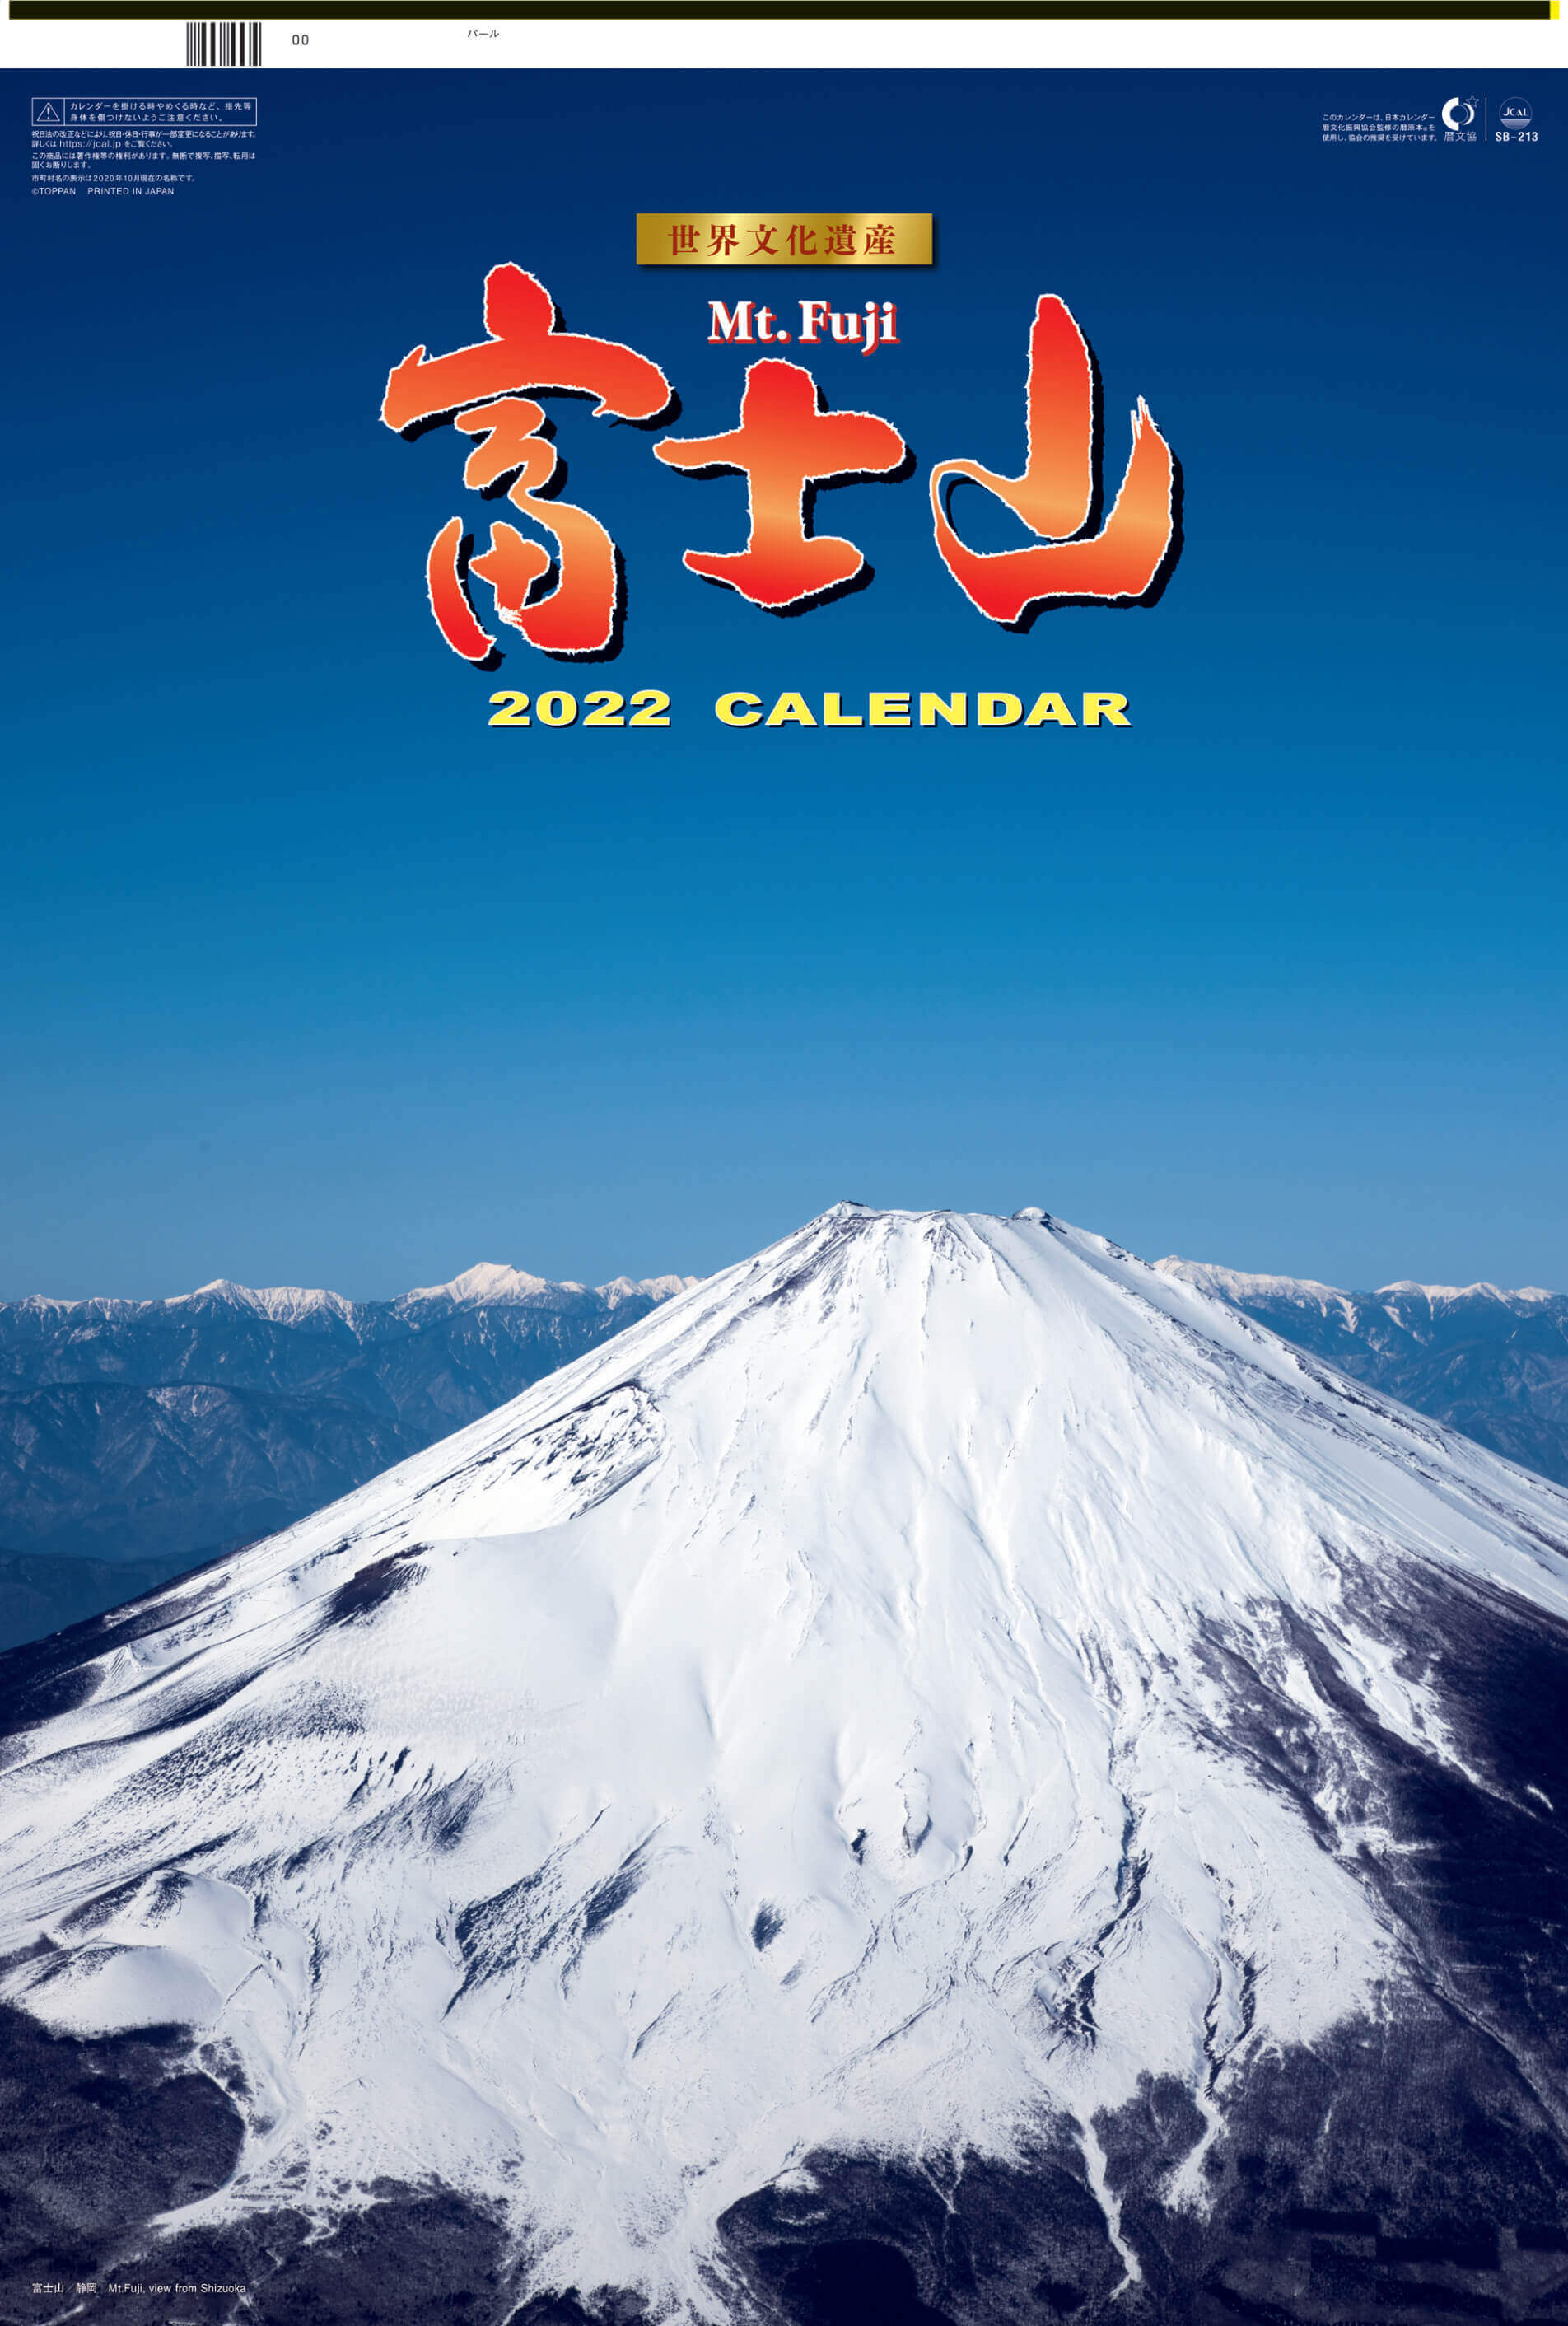  富士山(フィルムカレンダー) 2022年カレンダーの画像